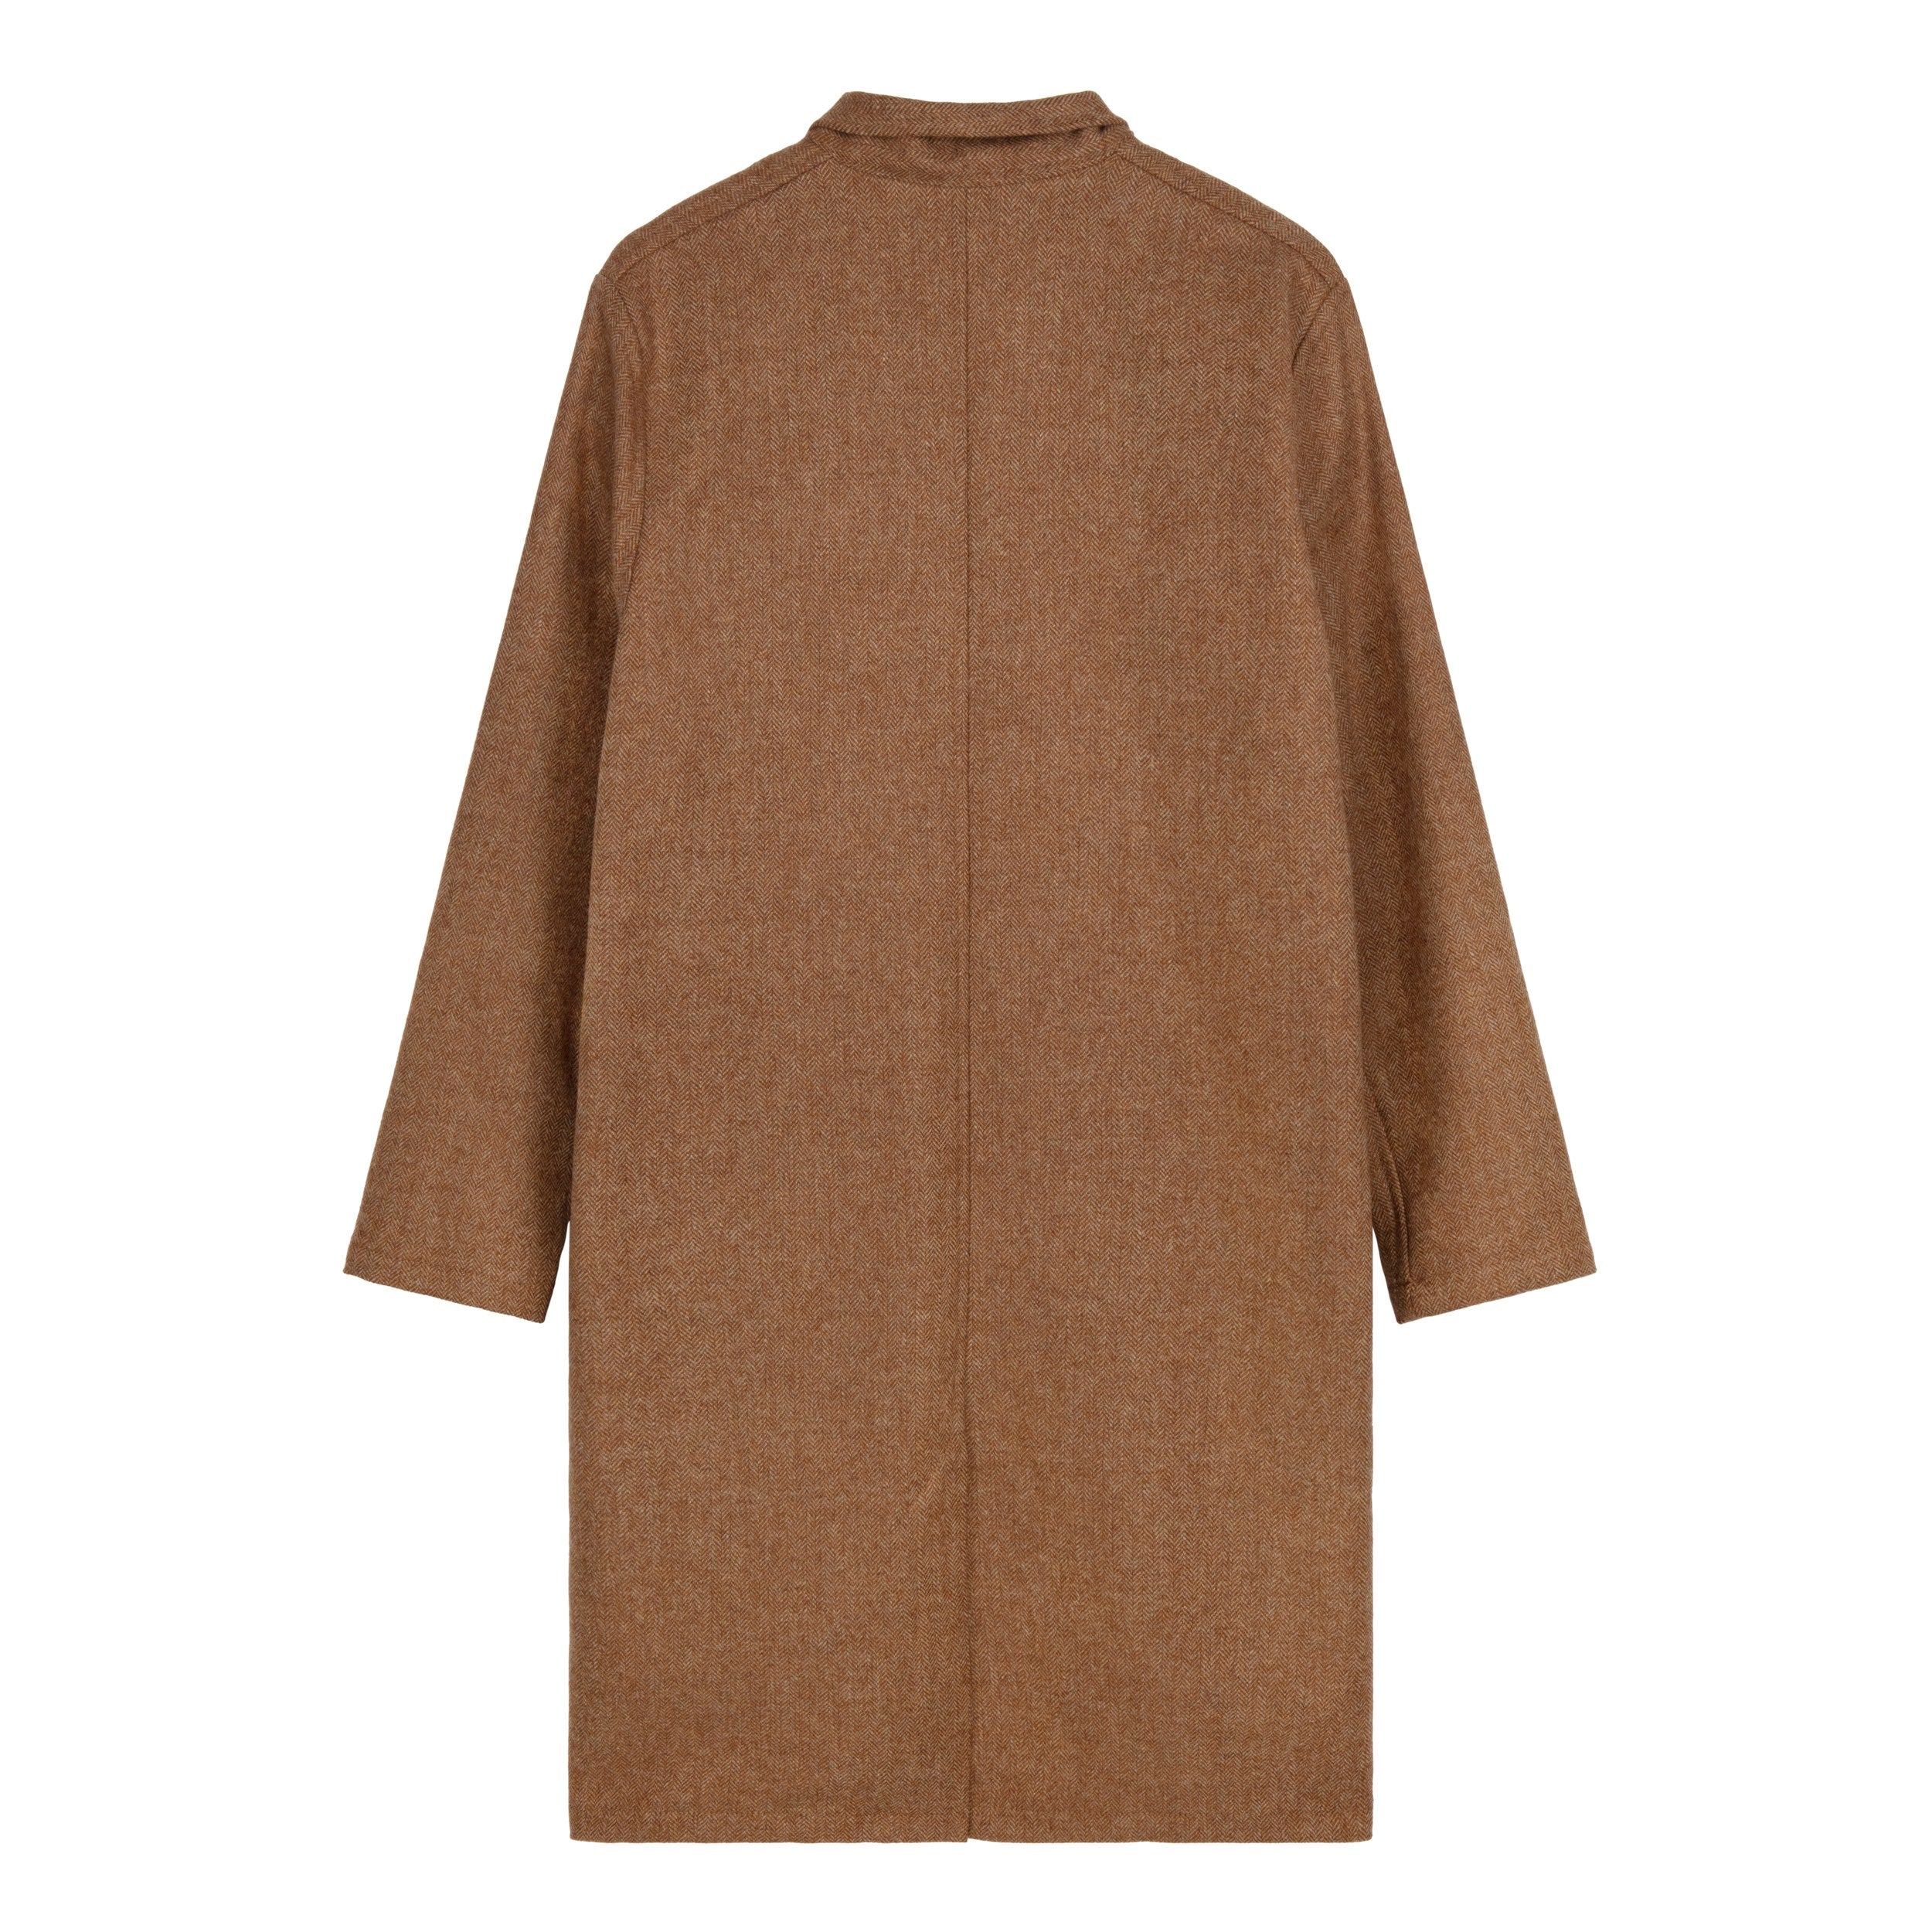 Carrier Company Tan Herringbone Wool Coat